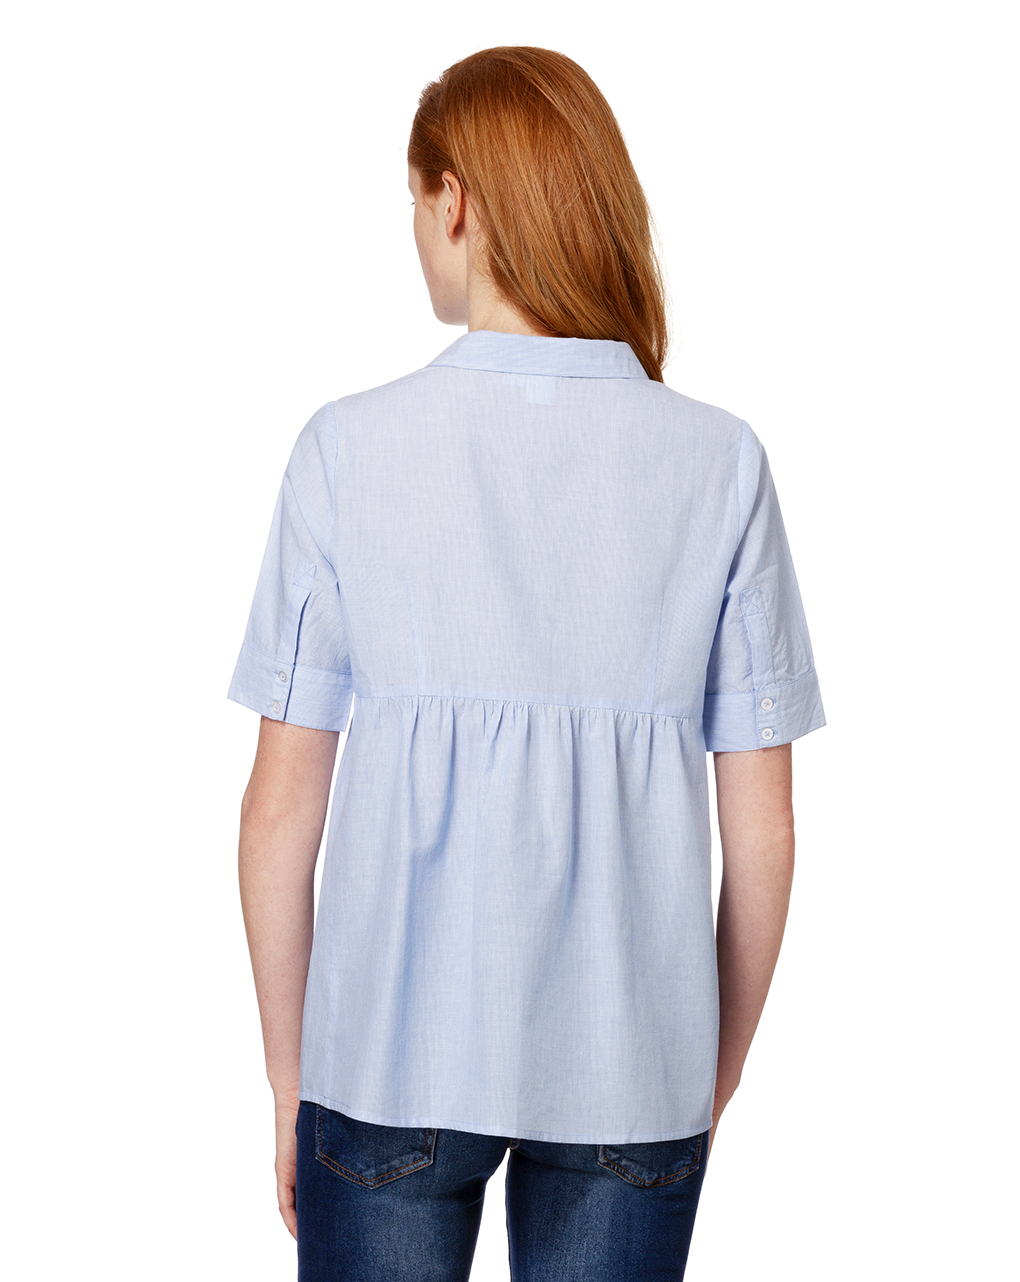 Camisa listrada azul clara com mangas curtas - Prénatal